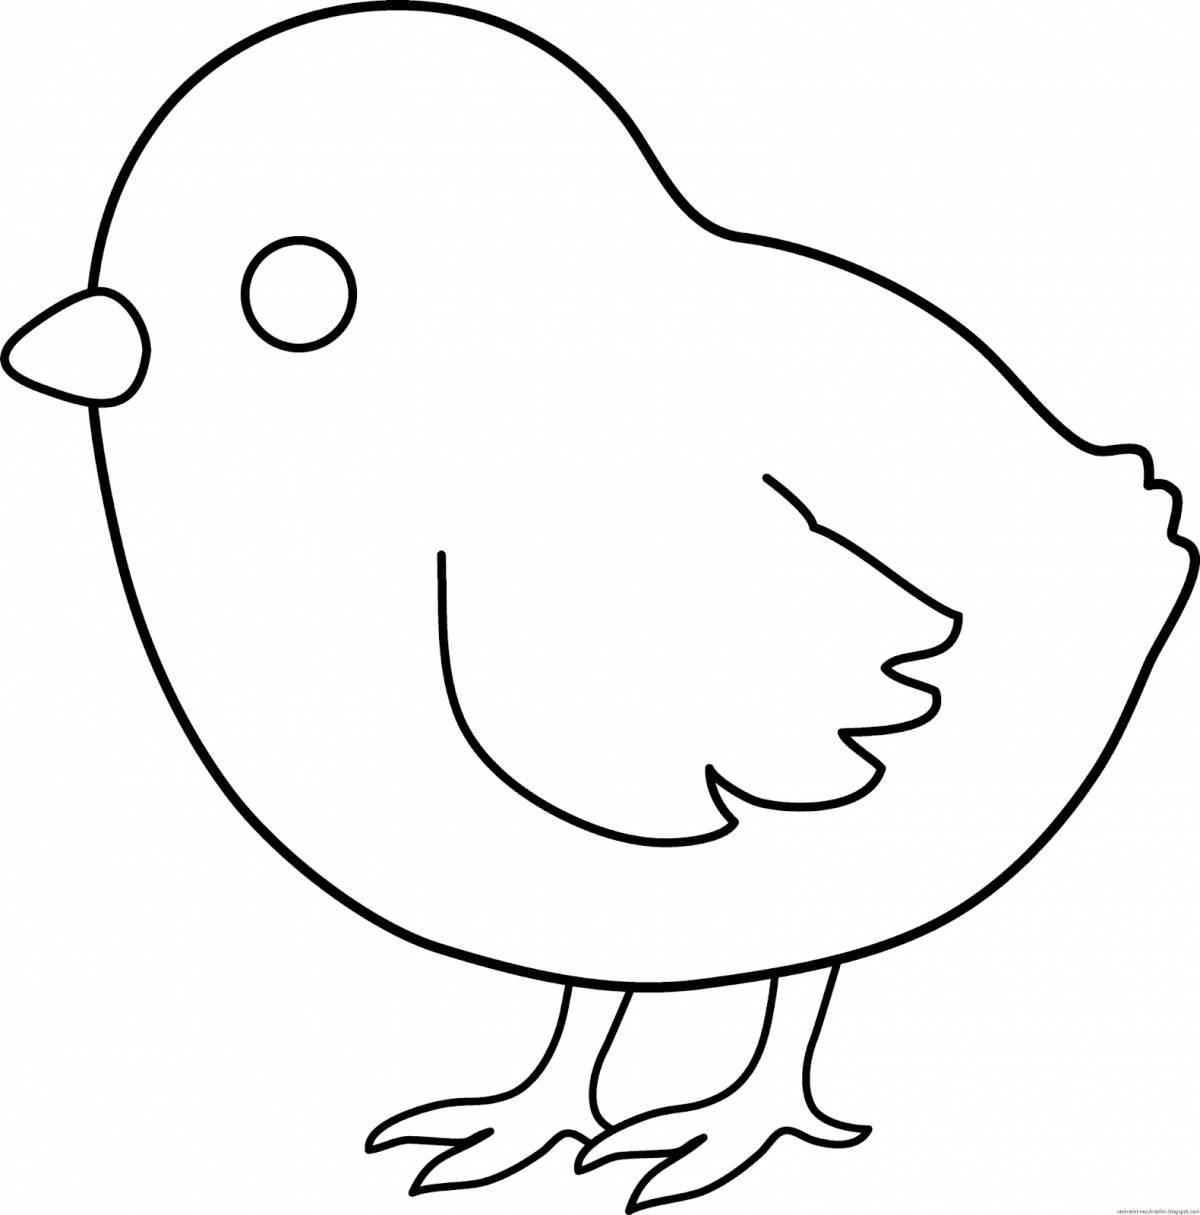 Забавный рисунок цыпленка для детей